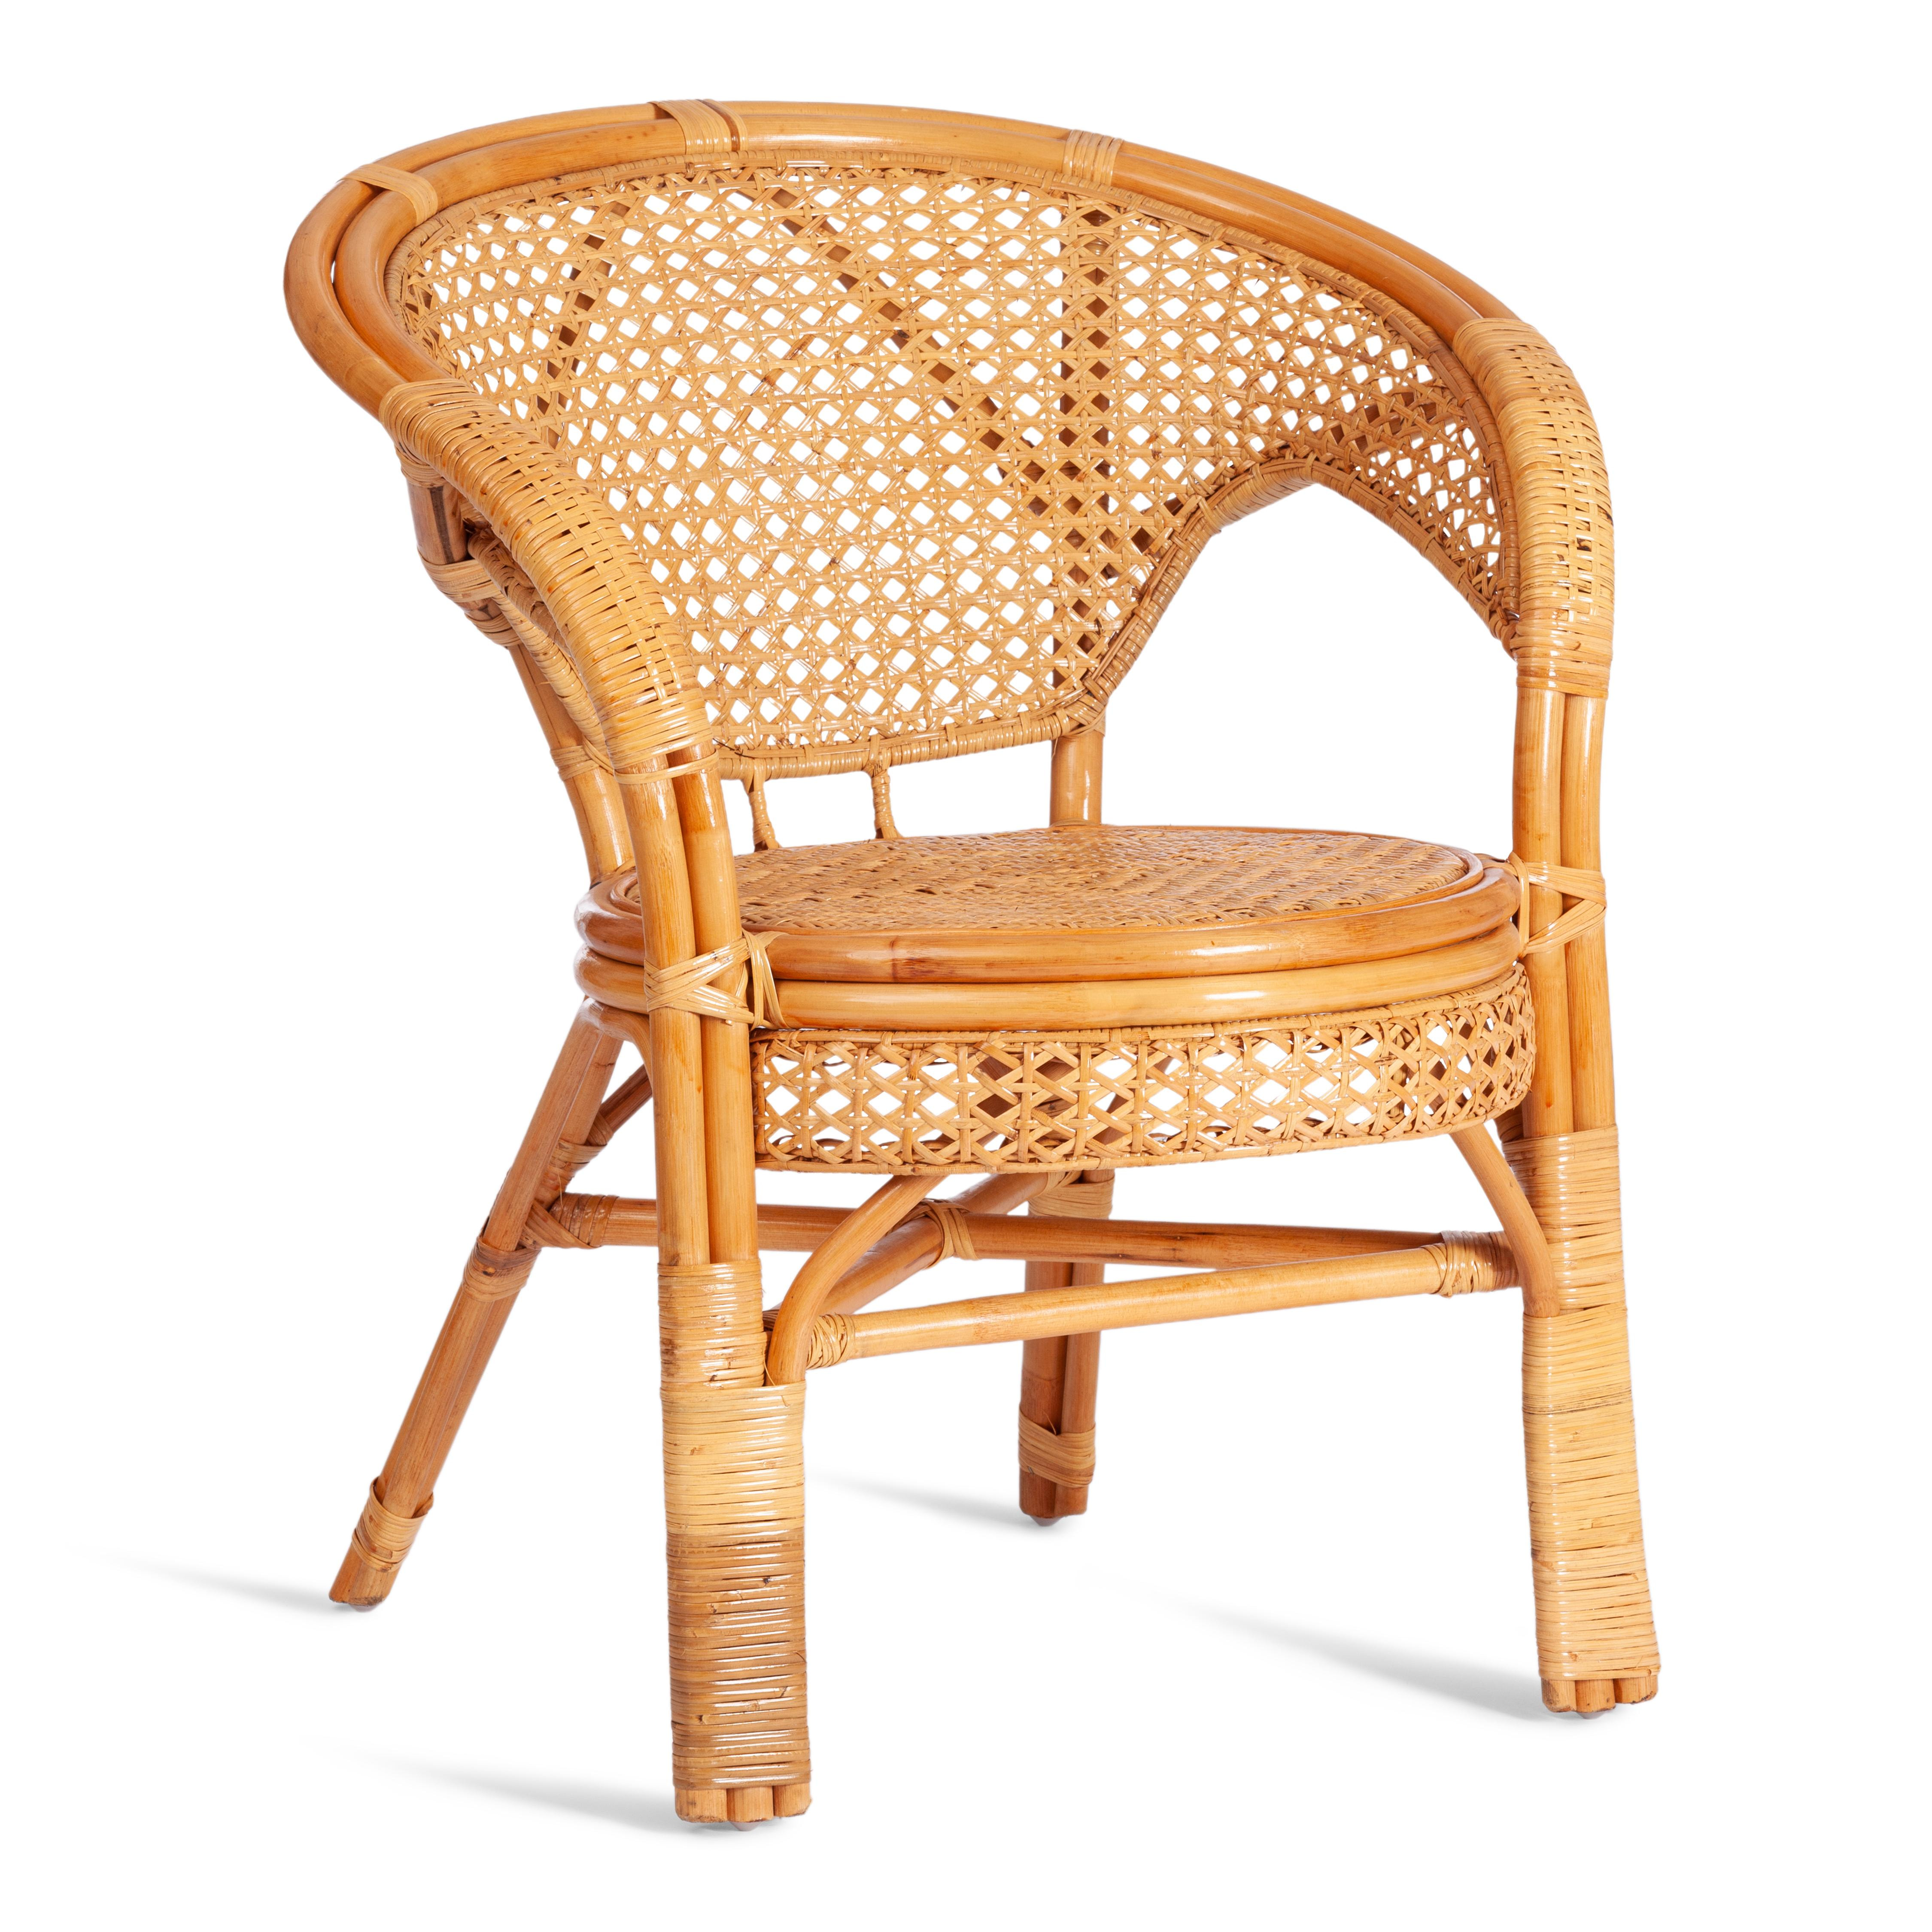 ТЕРРАСНЫЙ КОМПЛЕКТ "PELANGI" (стол со стеклом + 2 кресла) /без подушек/ ротанг, кресло 65х65х77см, стол диаметр 64х61см, Honey (мед)